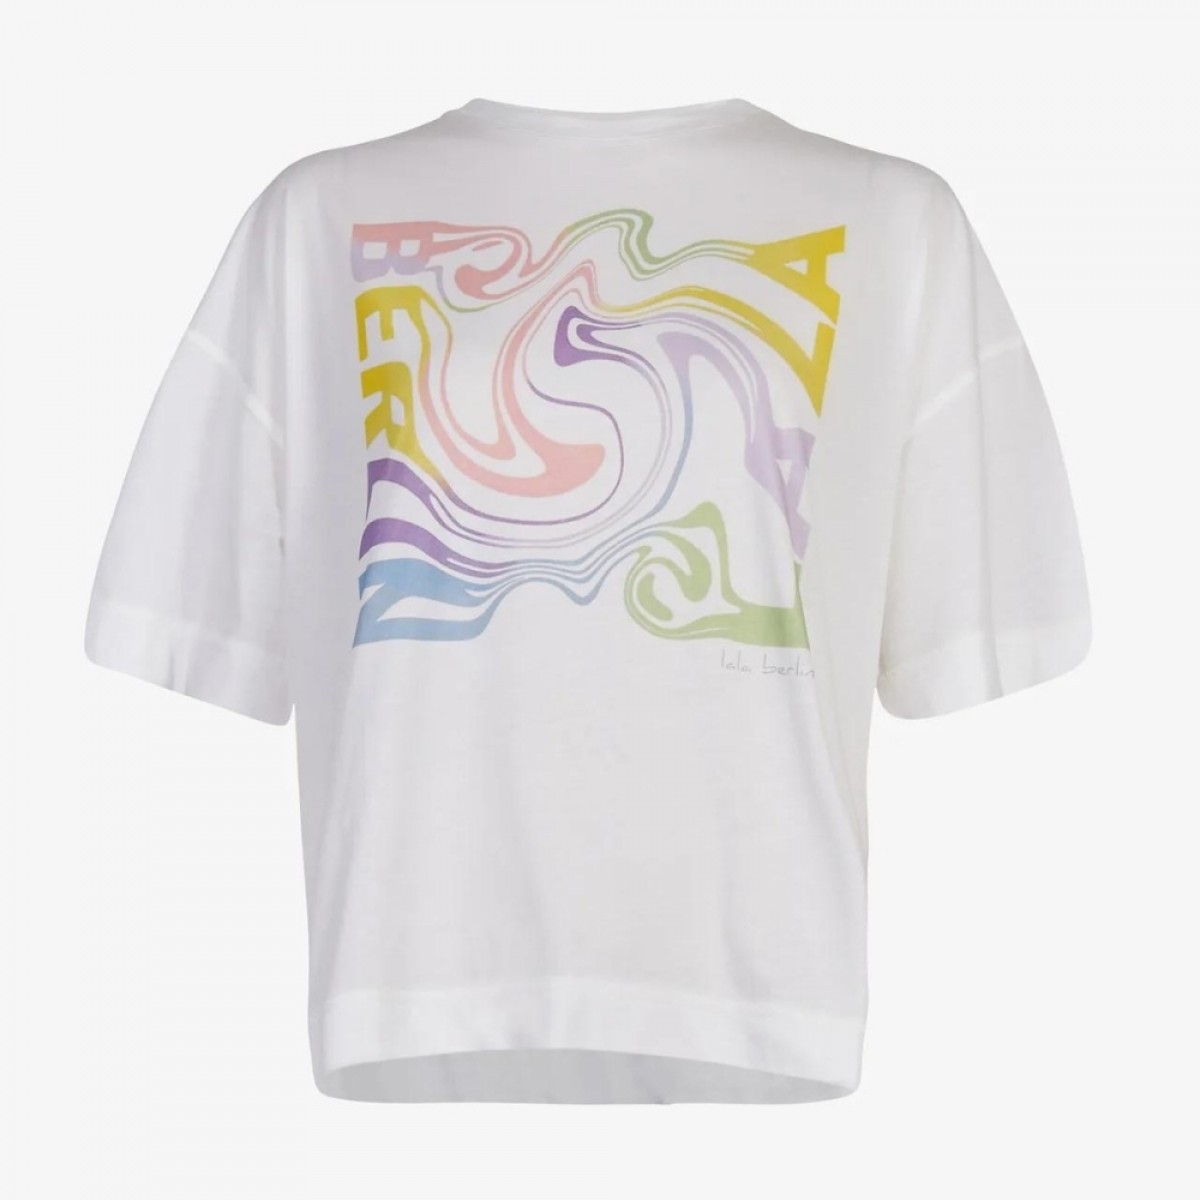 t-shirt creo swirl - white - front